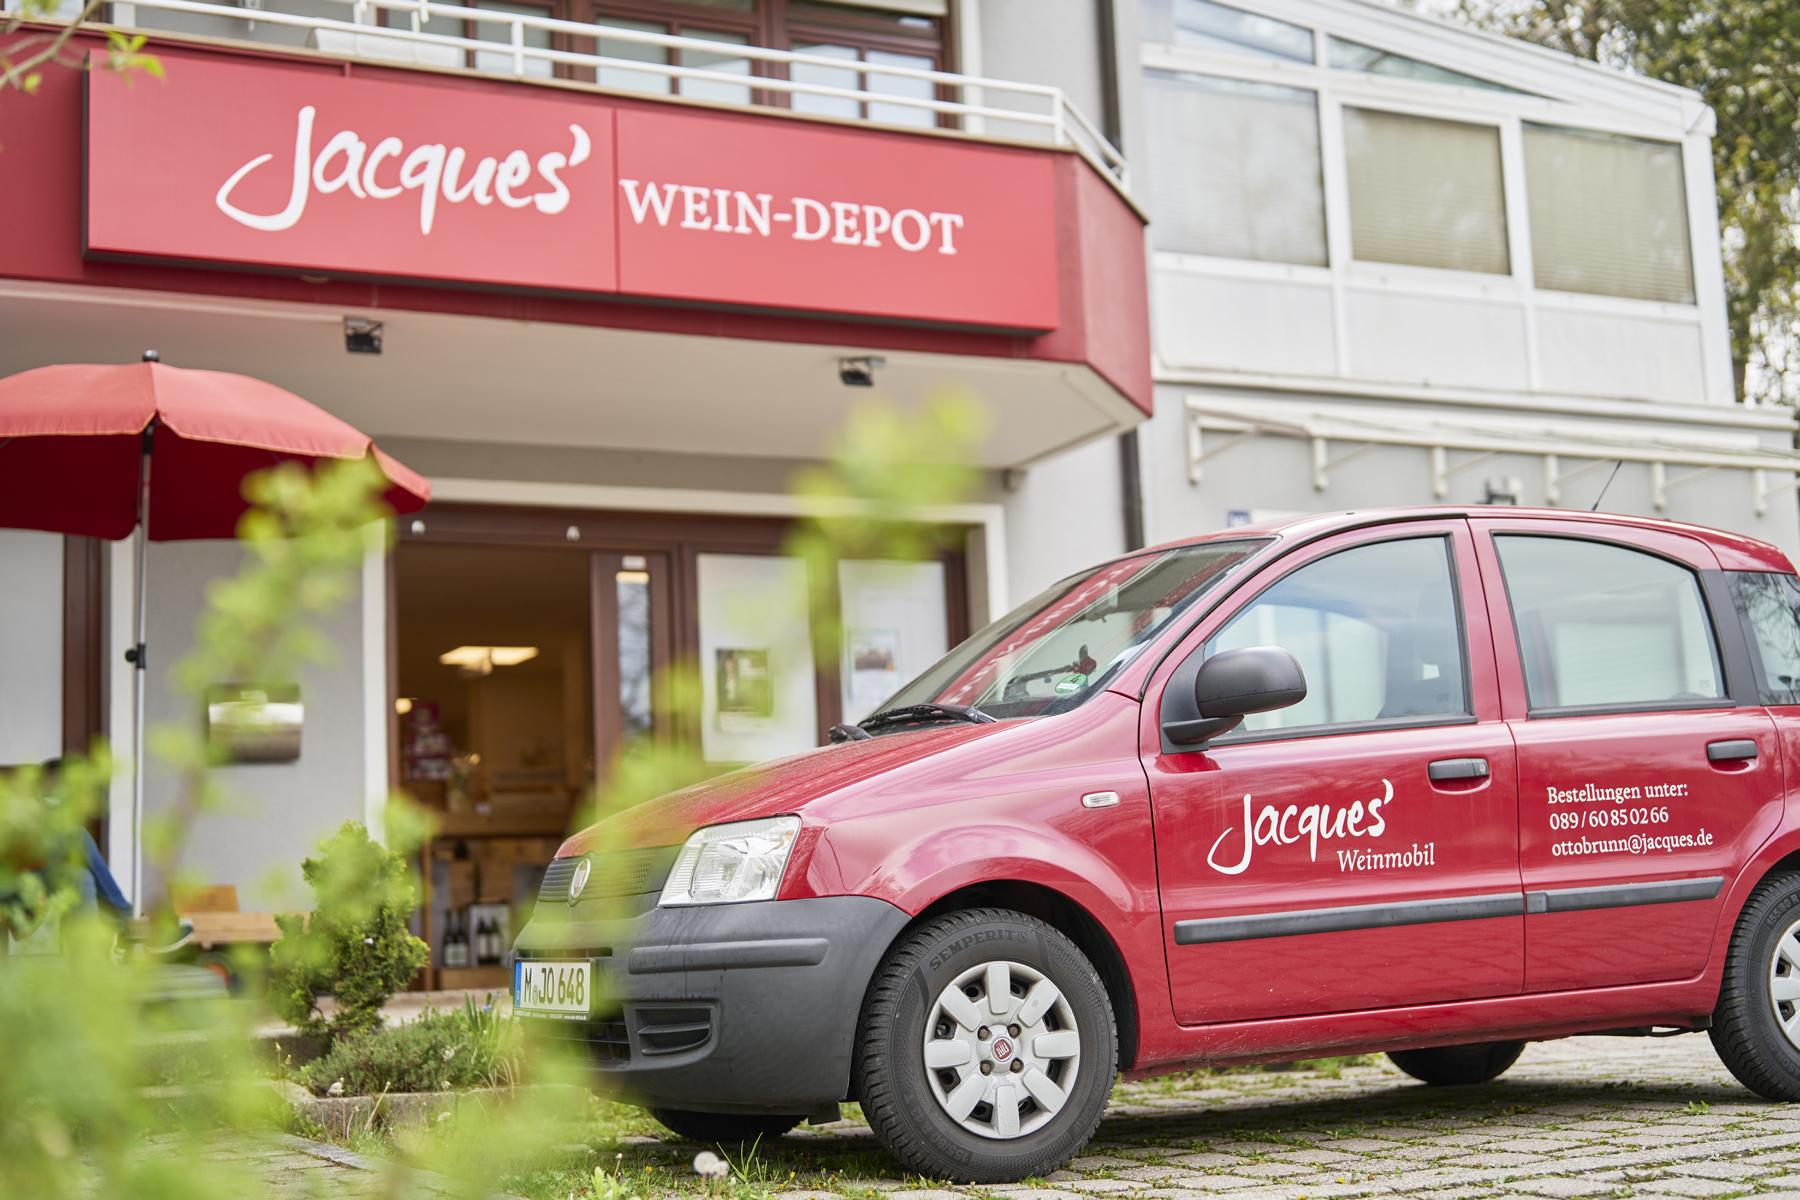 Kundenbild groß 1 Jacques’ Wein-Depot Ottobrunn-Riemerling